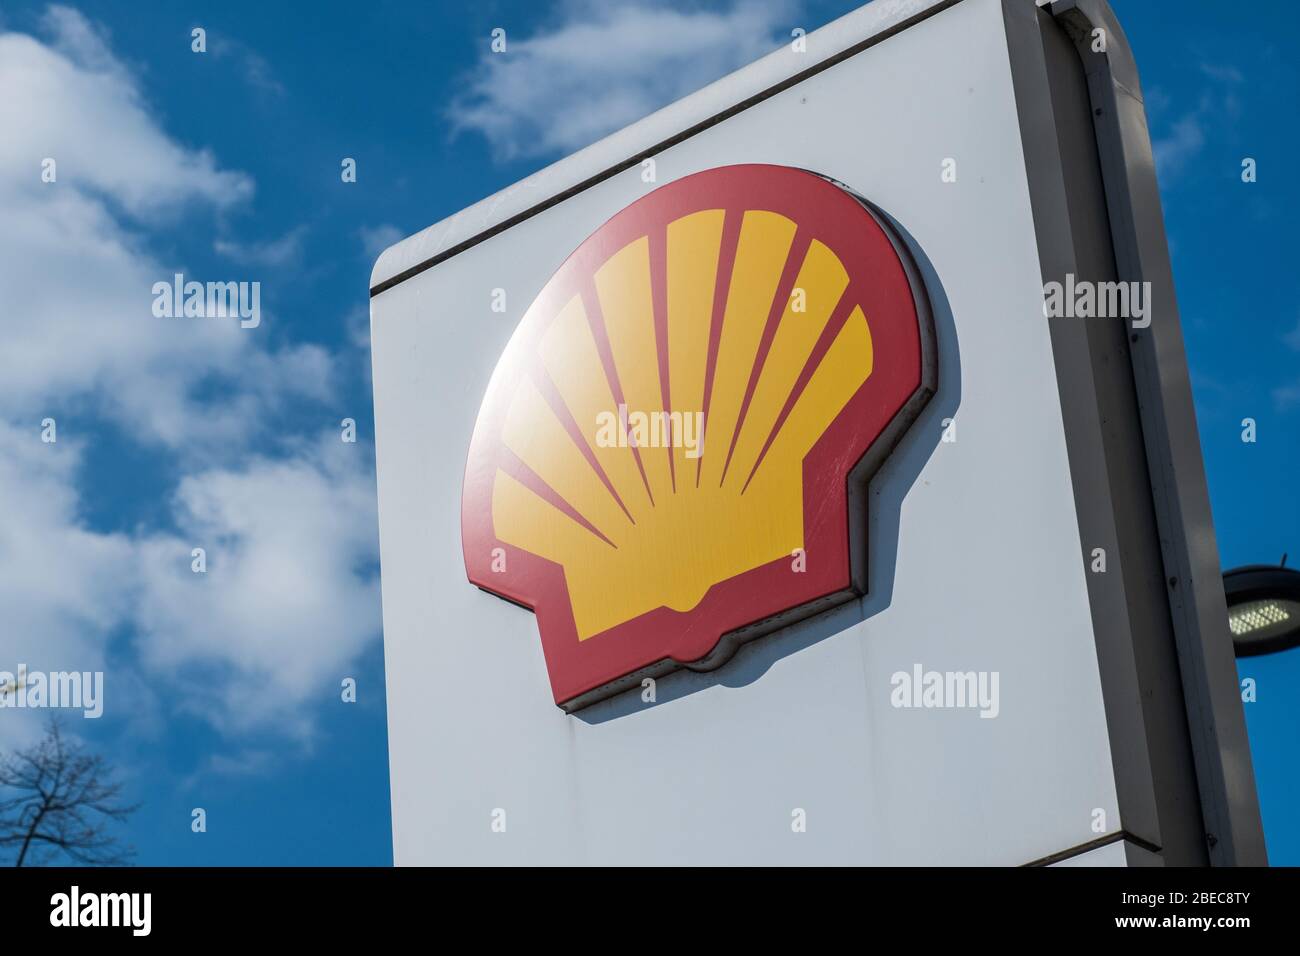 LONDRA - APRILE 2019: Logo Shell presso la stazione di rifornimento, nota anche come Royal Dutch Shell, una società britannica/olandese di petrolio e gas Foto Stock